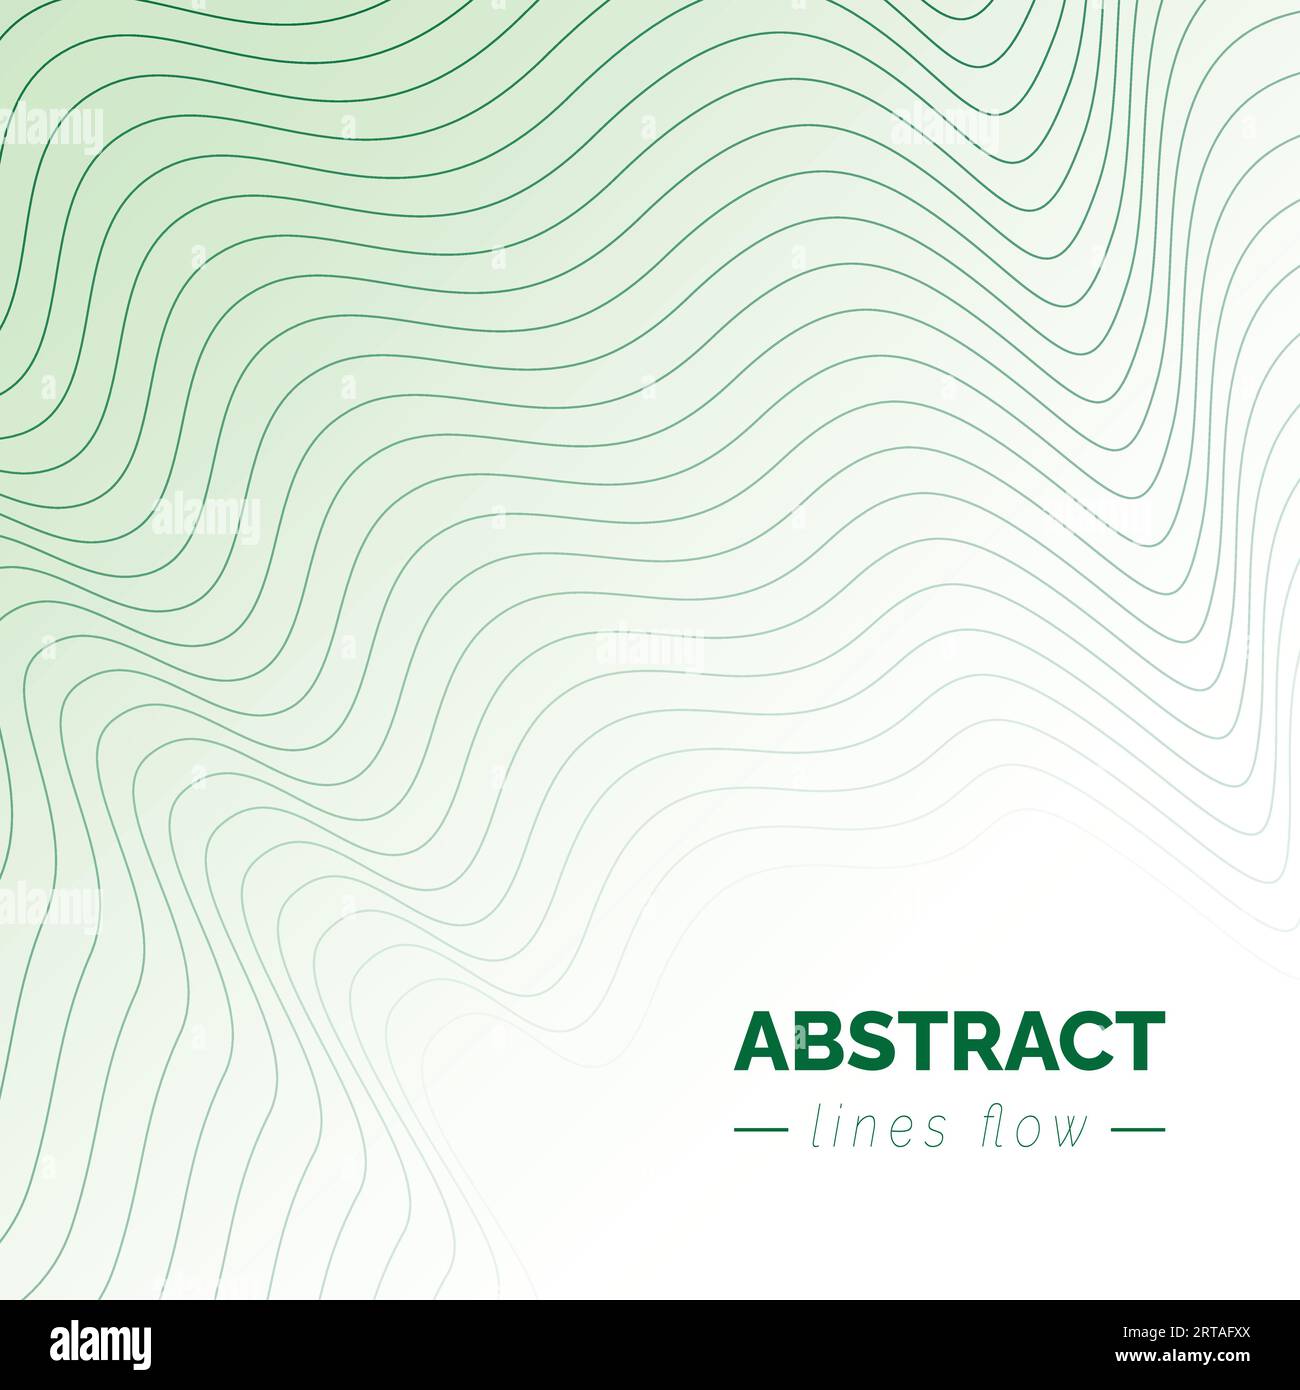 Abstrakter Fluss grüne wellenförmige Linien Hintergrund, moderne bewegliche Linien Design, futuristisches Technologiekonzept, Vektorillustration Stock Vektor